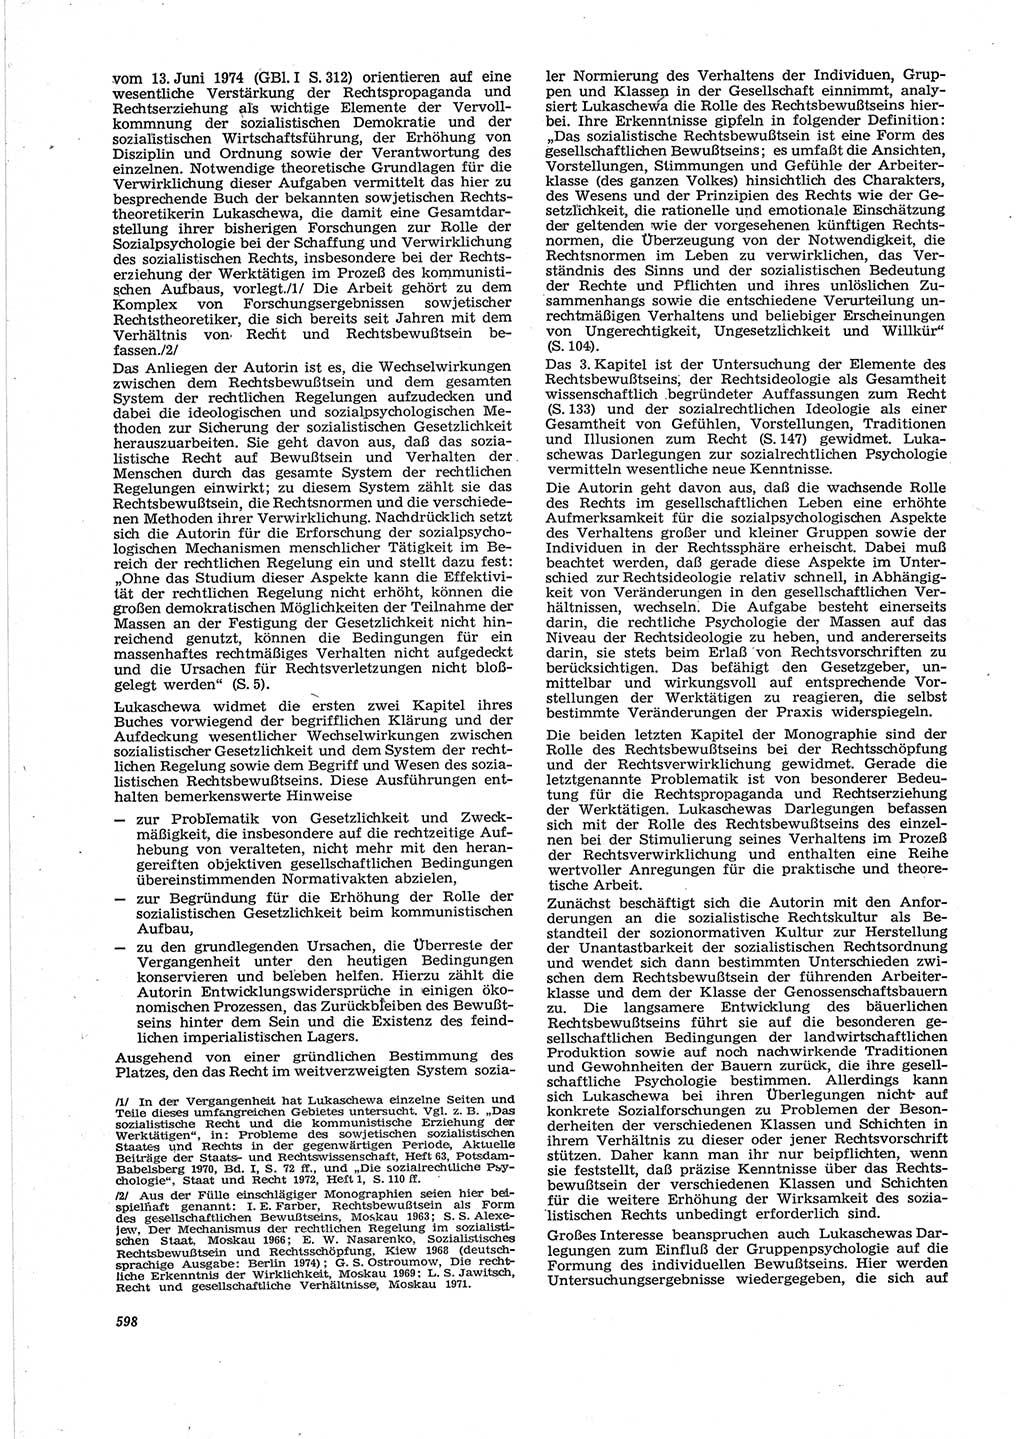 Neue Justiz (NJ), Zeitschrift für Recht und Rechtswissenschaft [Deutsche Demokratische Republik (DDR)], 28. Jahrgang 1974, Seite 598 (NJ DDR 1974, S. 598)